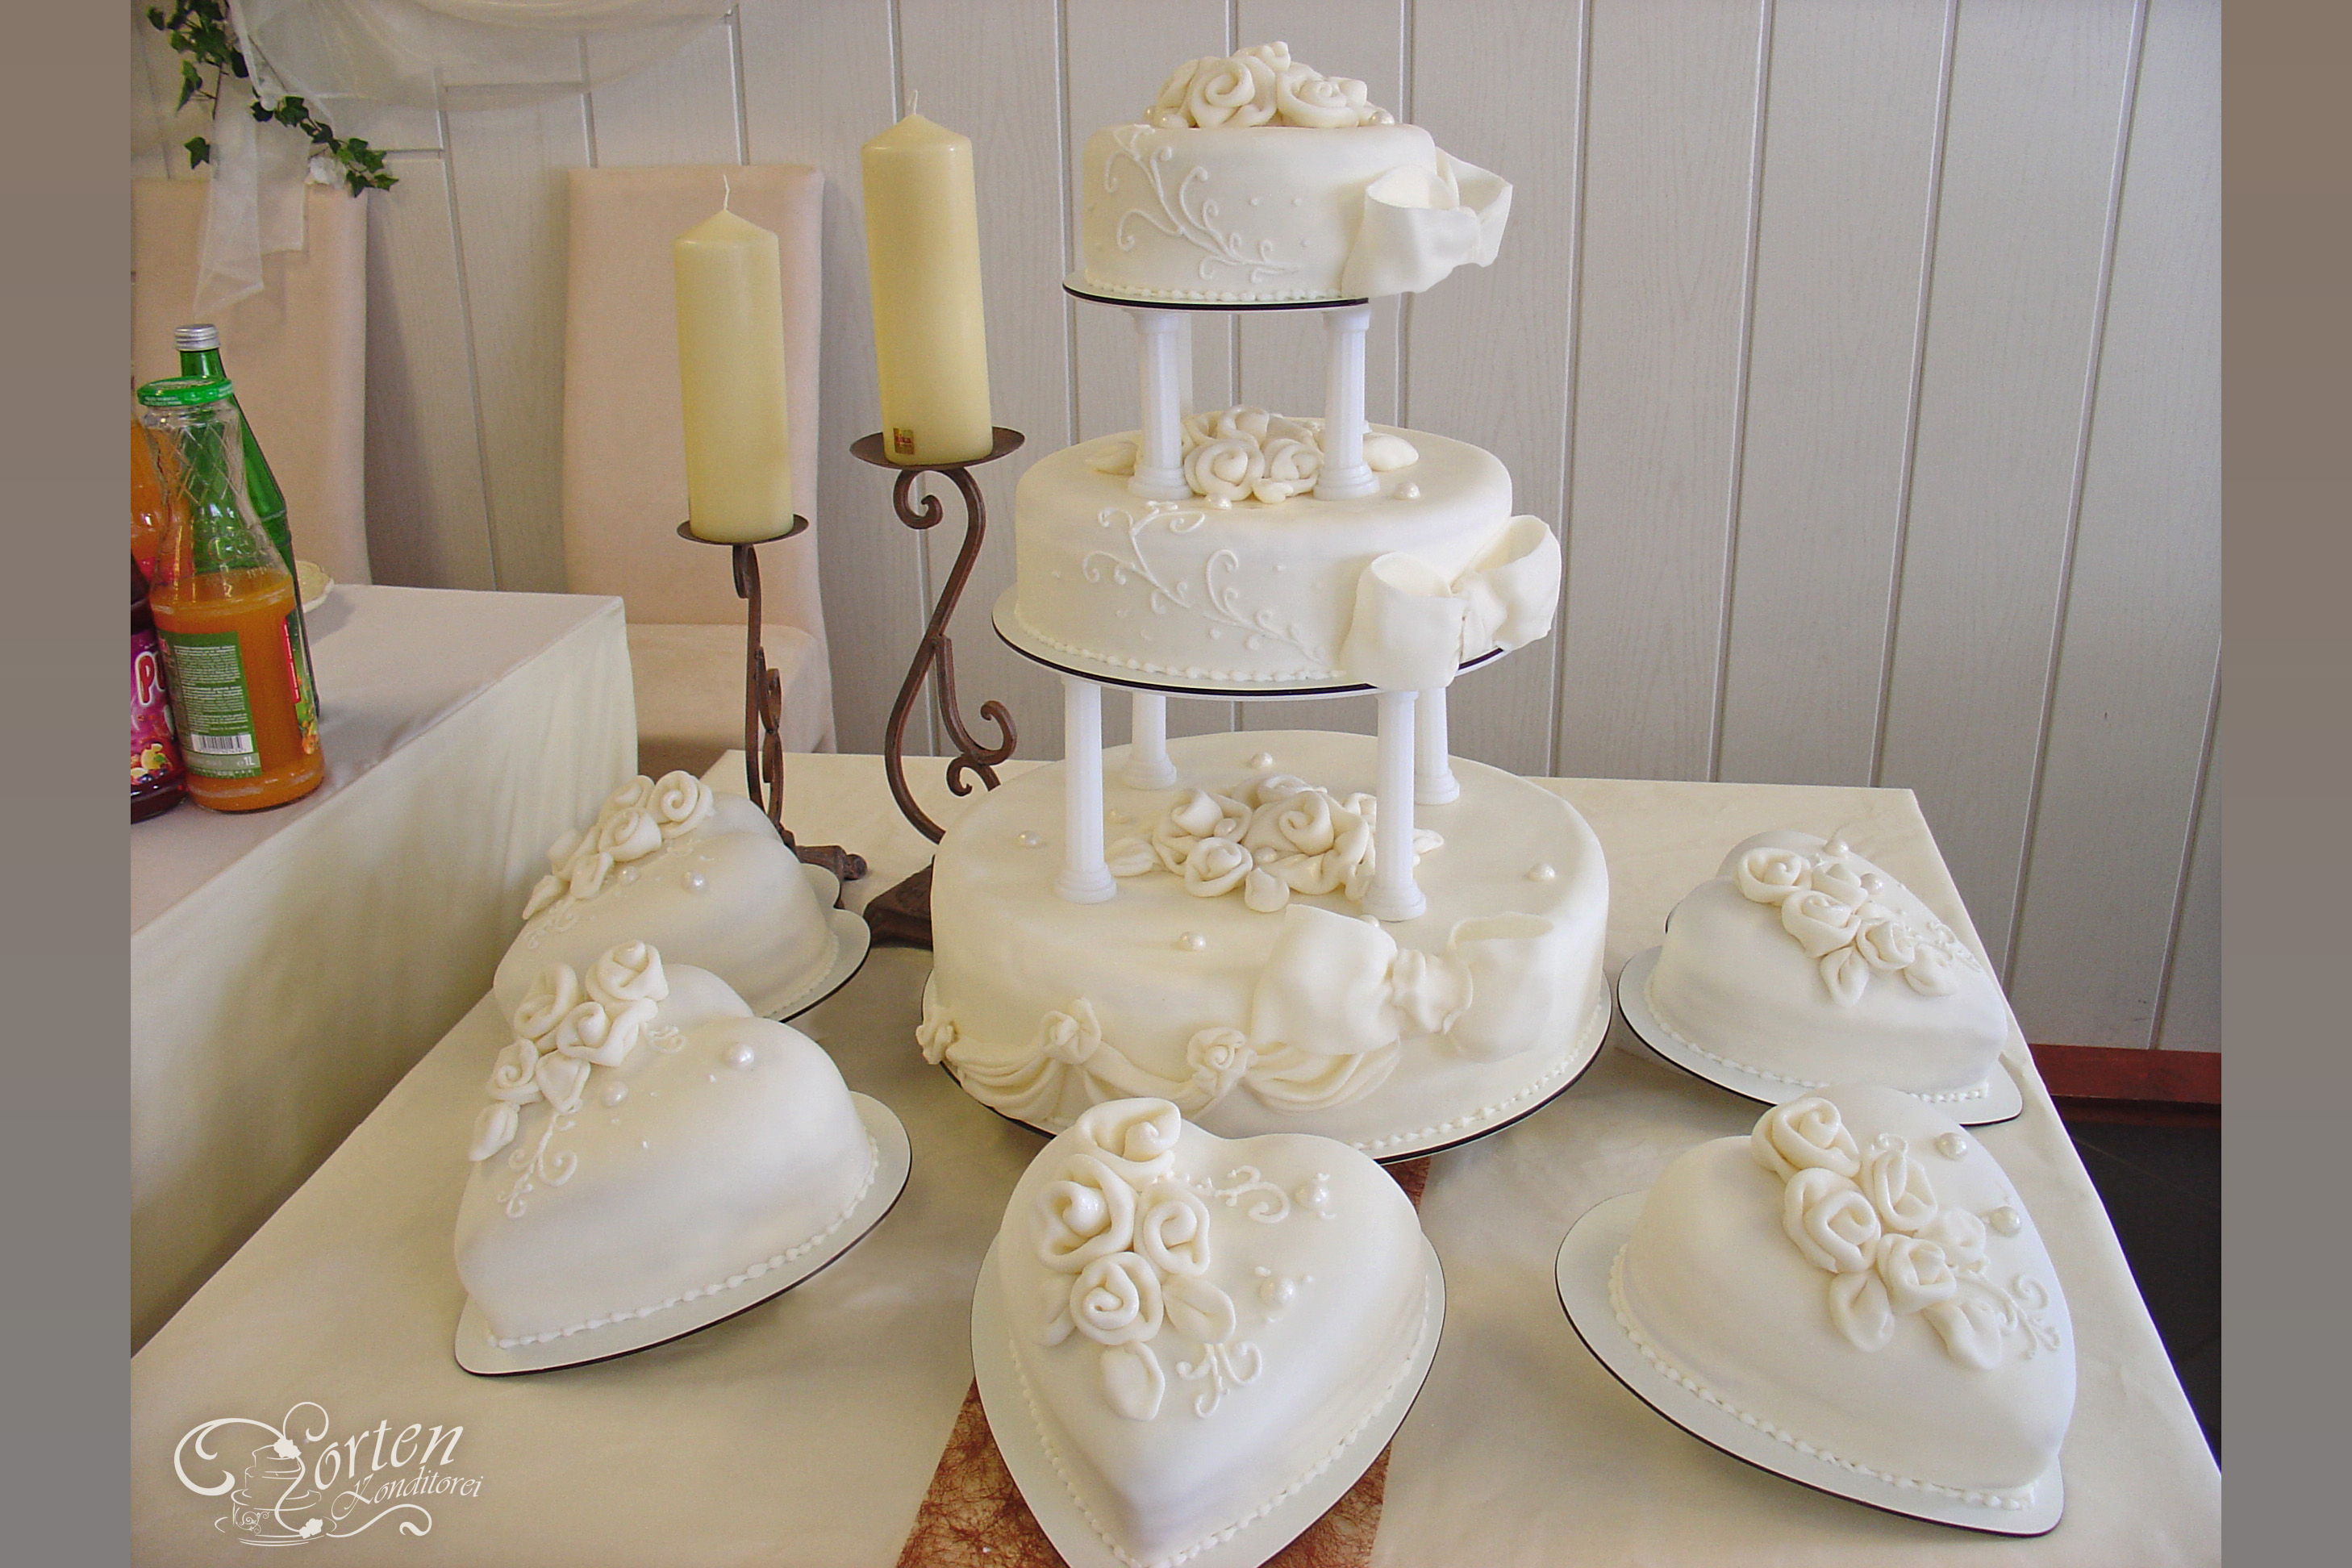 Sehr elegante, weiße zarte Hochzeitstorte, die zu jeder Hochzeitsdekoration passt. Die Torten sind gedeckt mit Fondant, weißen Rosen, Perlen, Schleifen und verziert mit einem Muster.